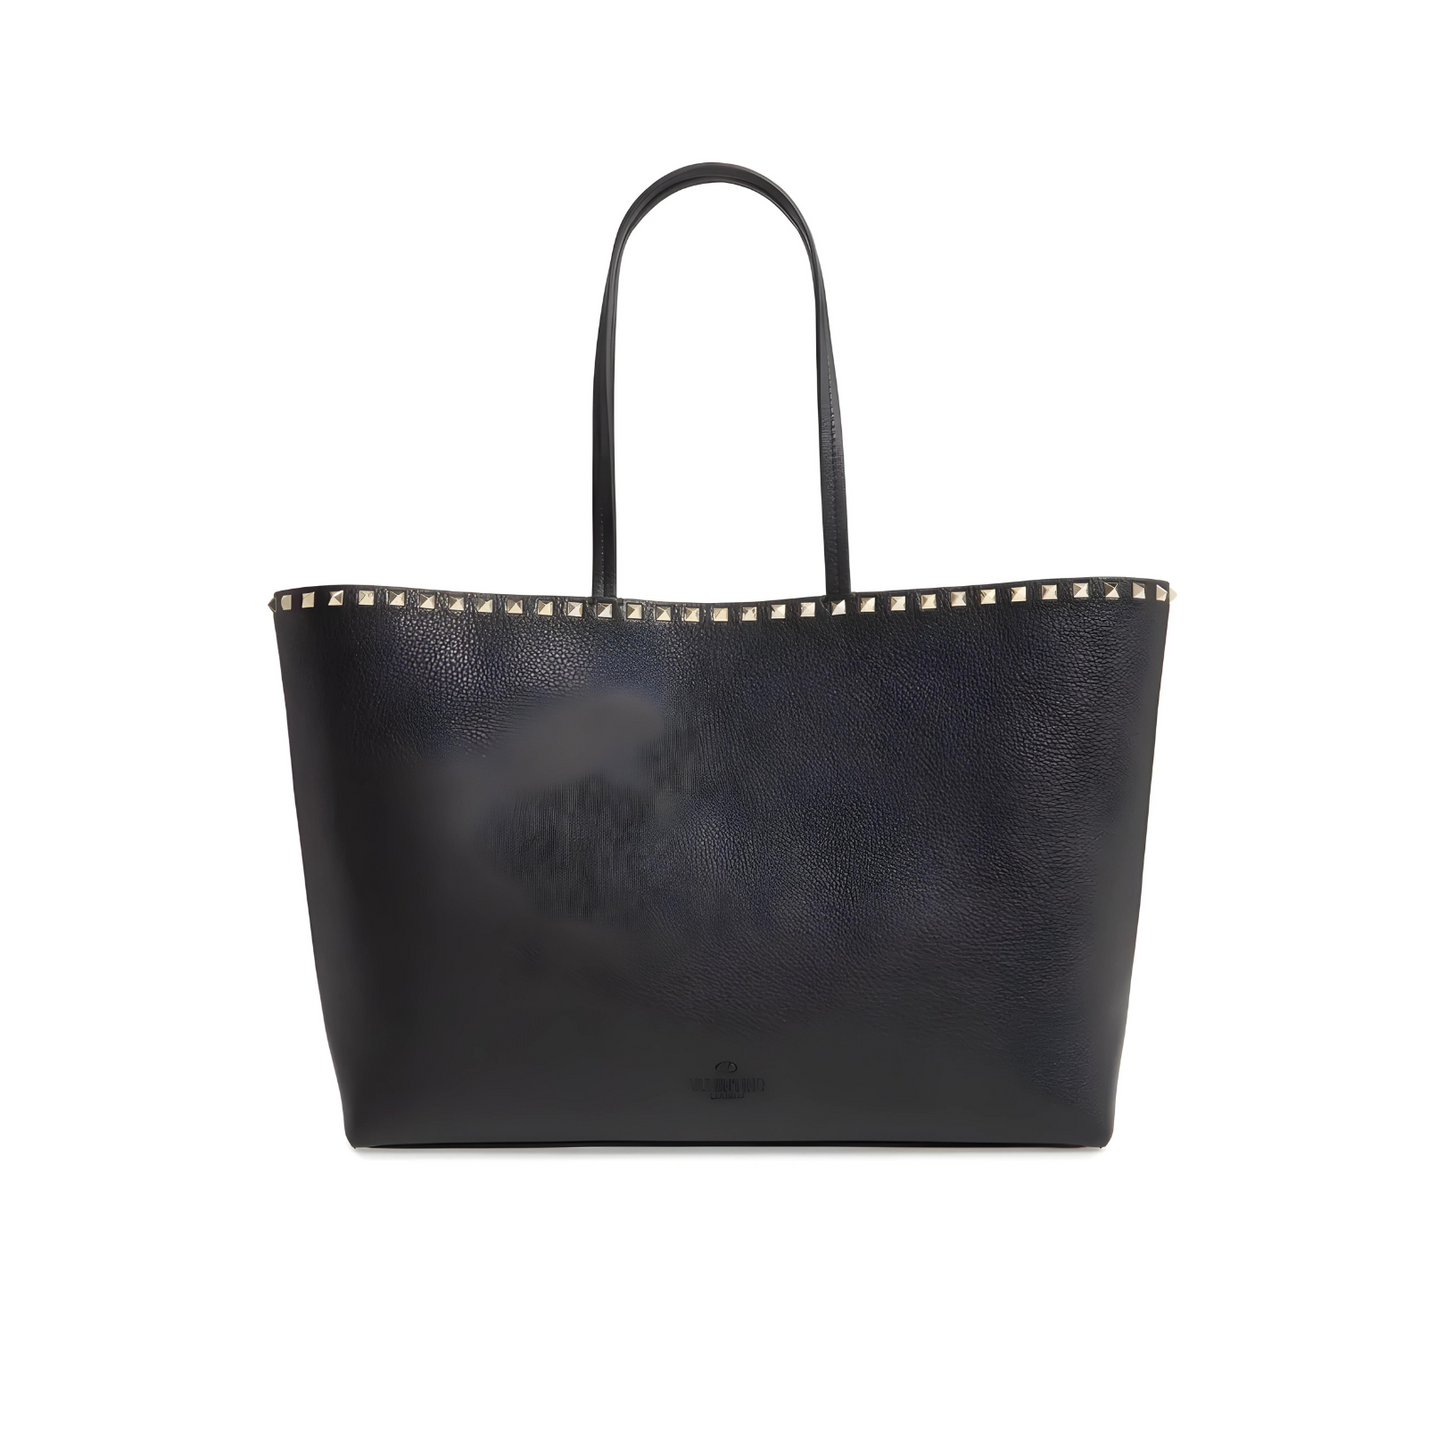 Valentino Black Rockstud Leather Tote Bag